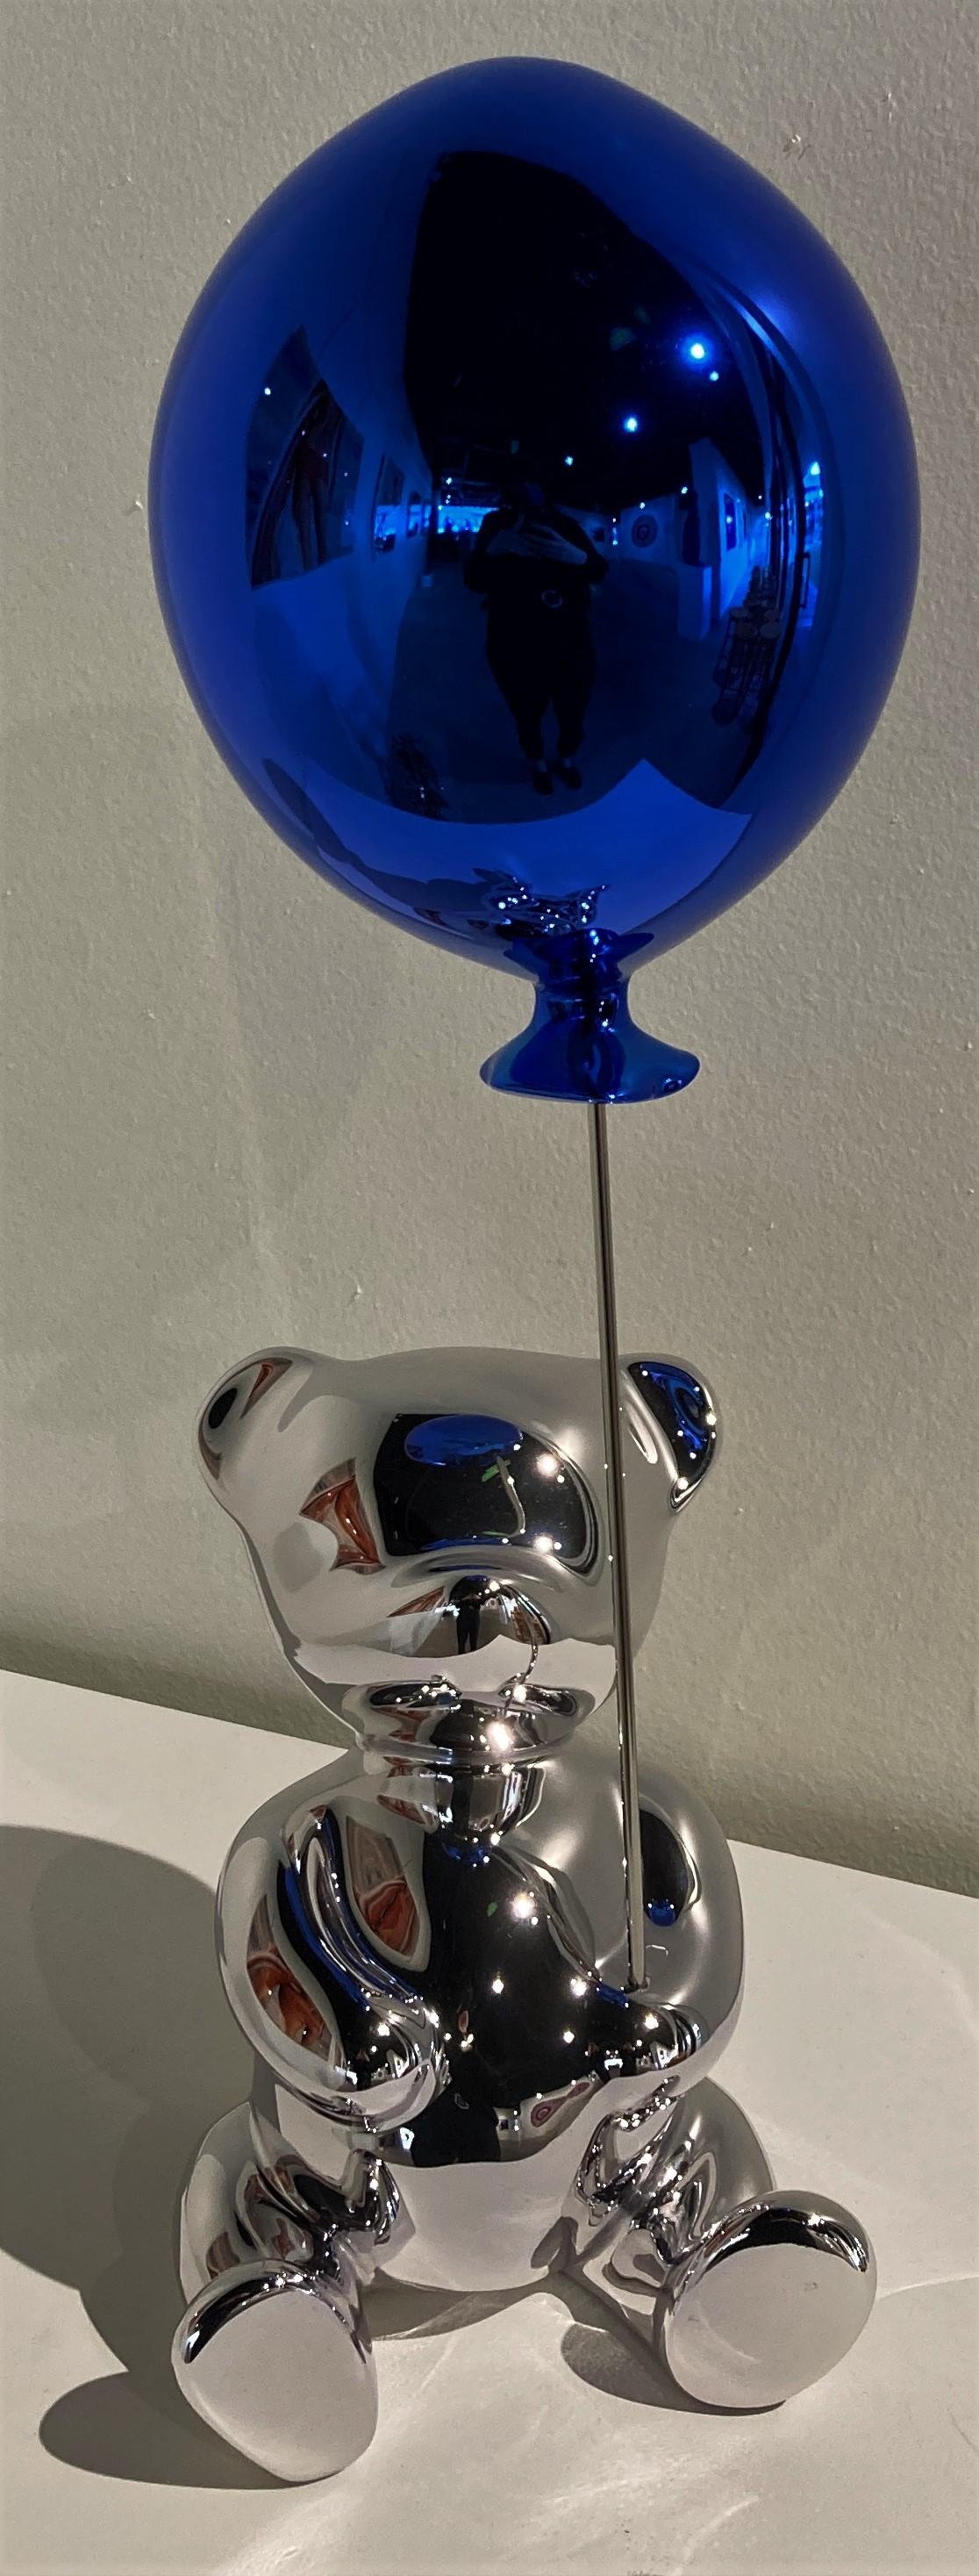 Chubby Silver Balloon Blue  - Mixed Media Art by Cévé